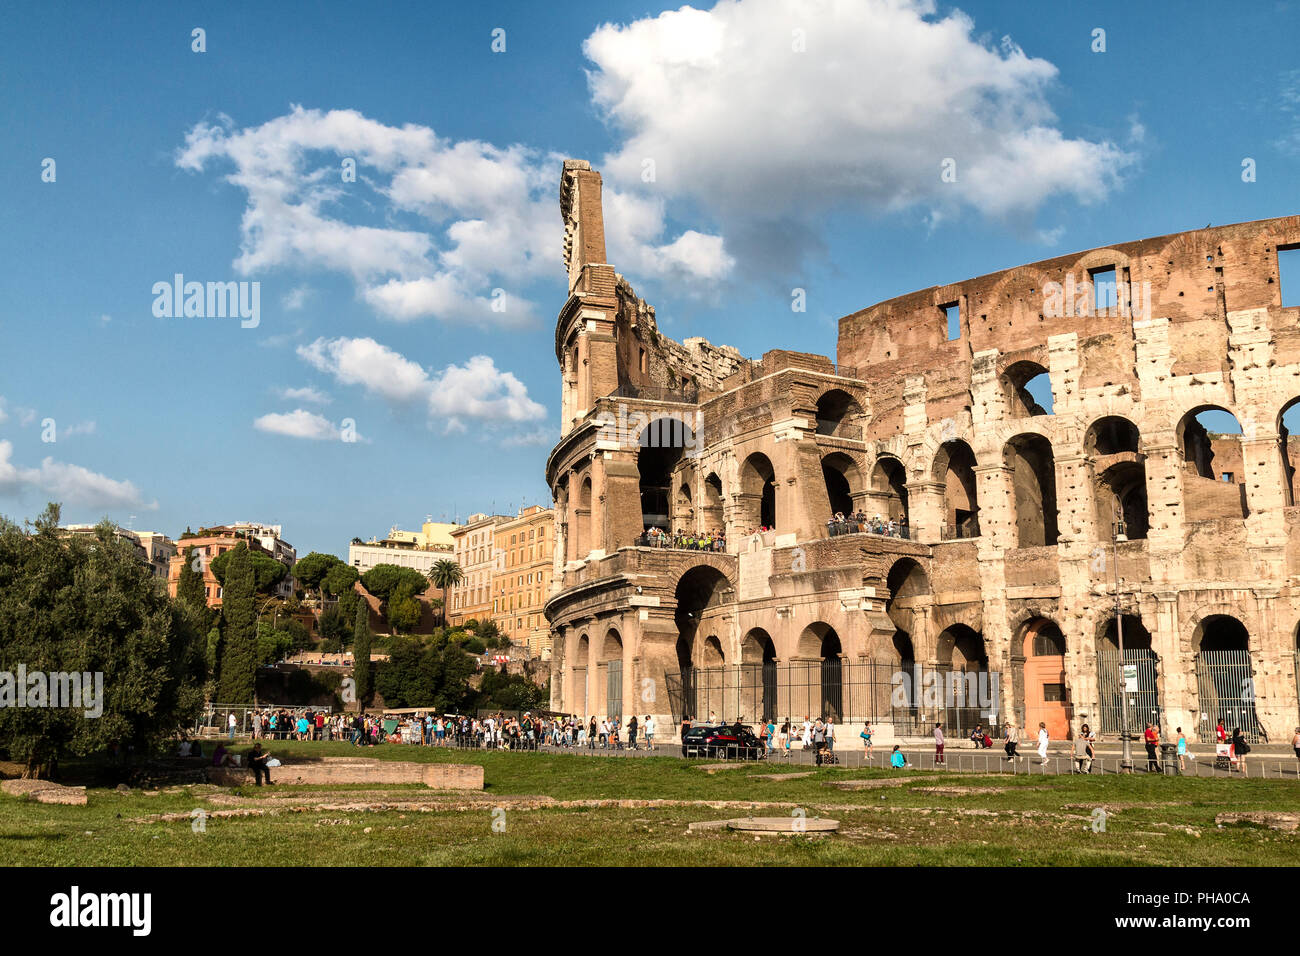 Rome, Italie - 11 octobre 2014 : partie de l'amphithéâtre Flavien connu comme le Colisée. C'est l'une des principales attractions touristiques de la ville de Rome Banque D'Images